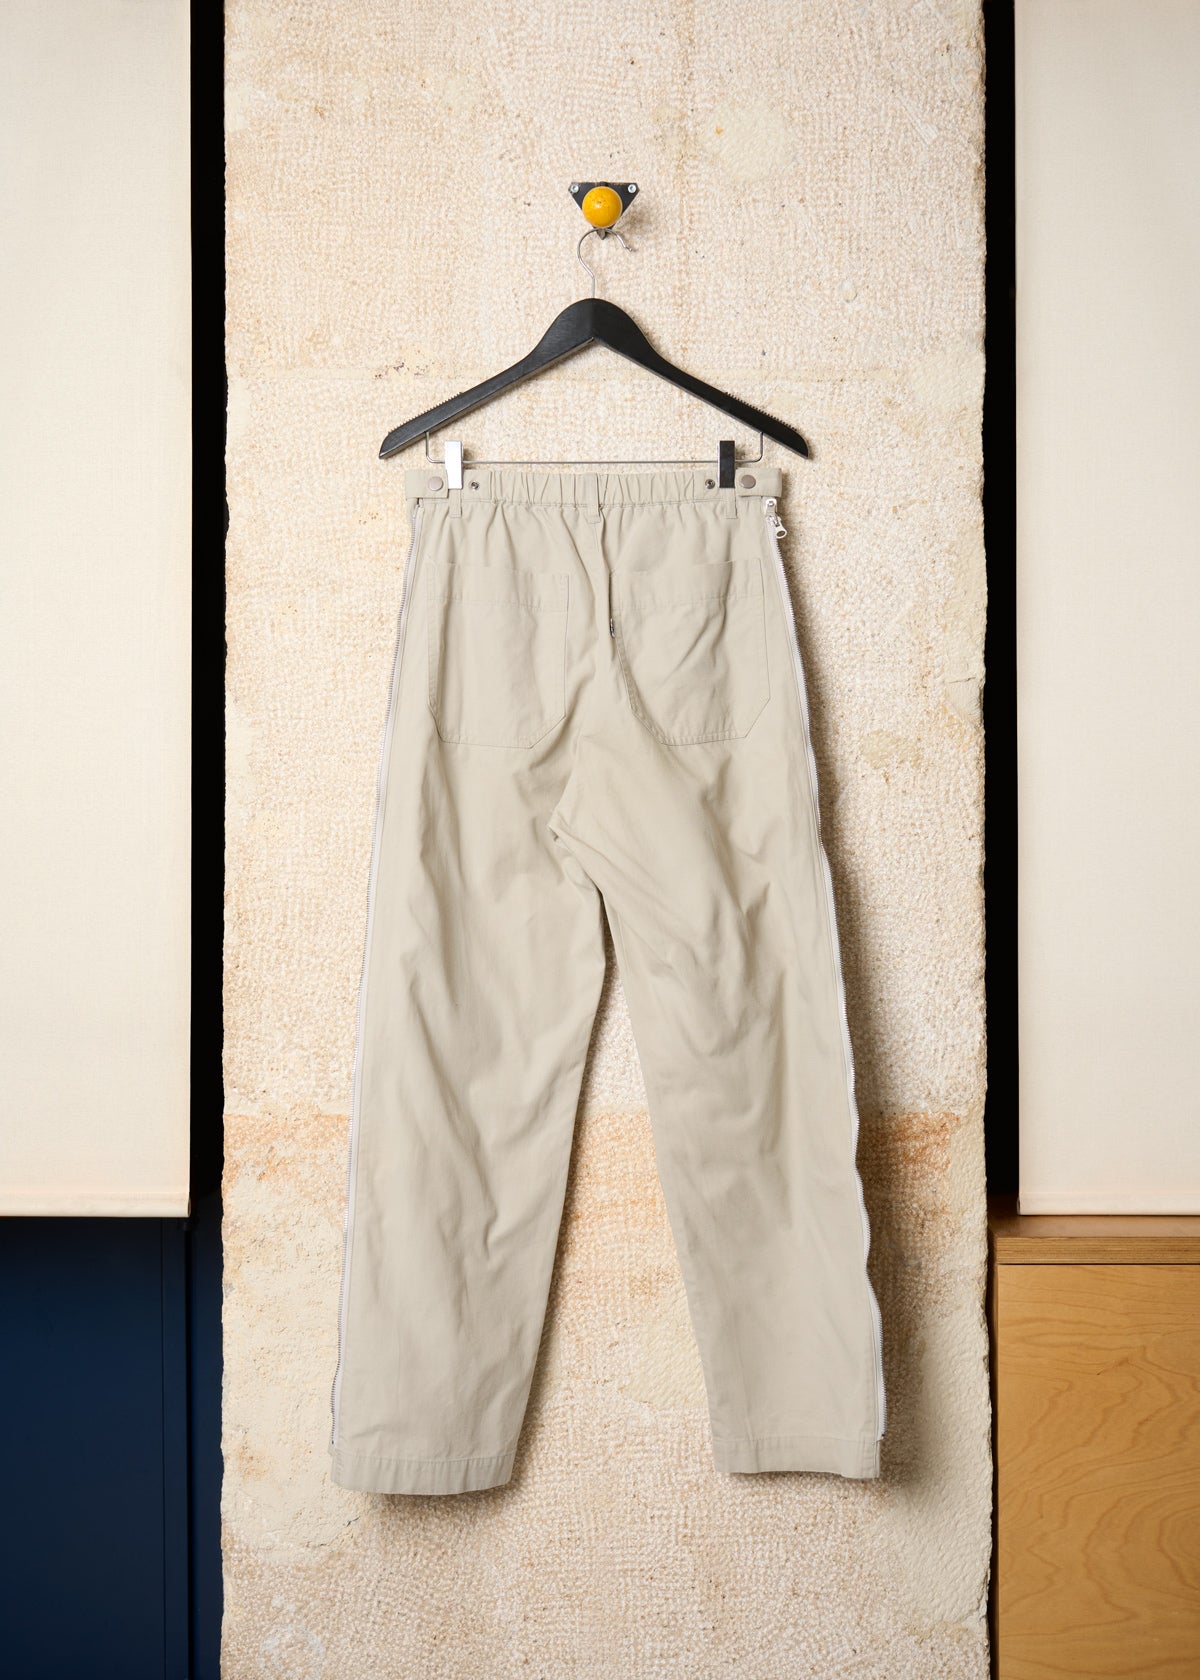 Grey Cotton Ripstop Side Zip Pants 1990's - 2